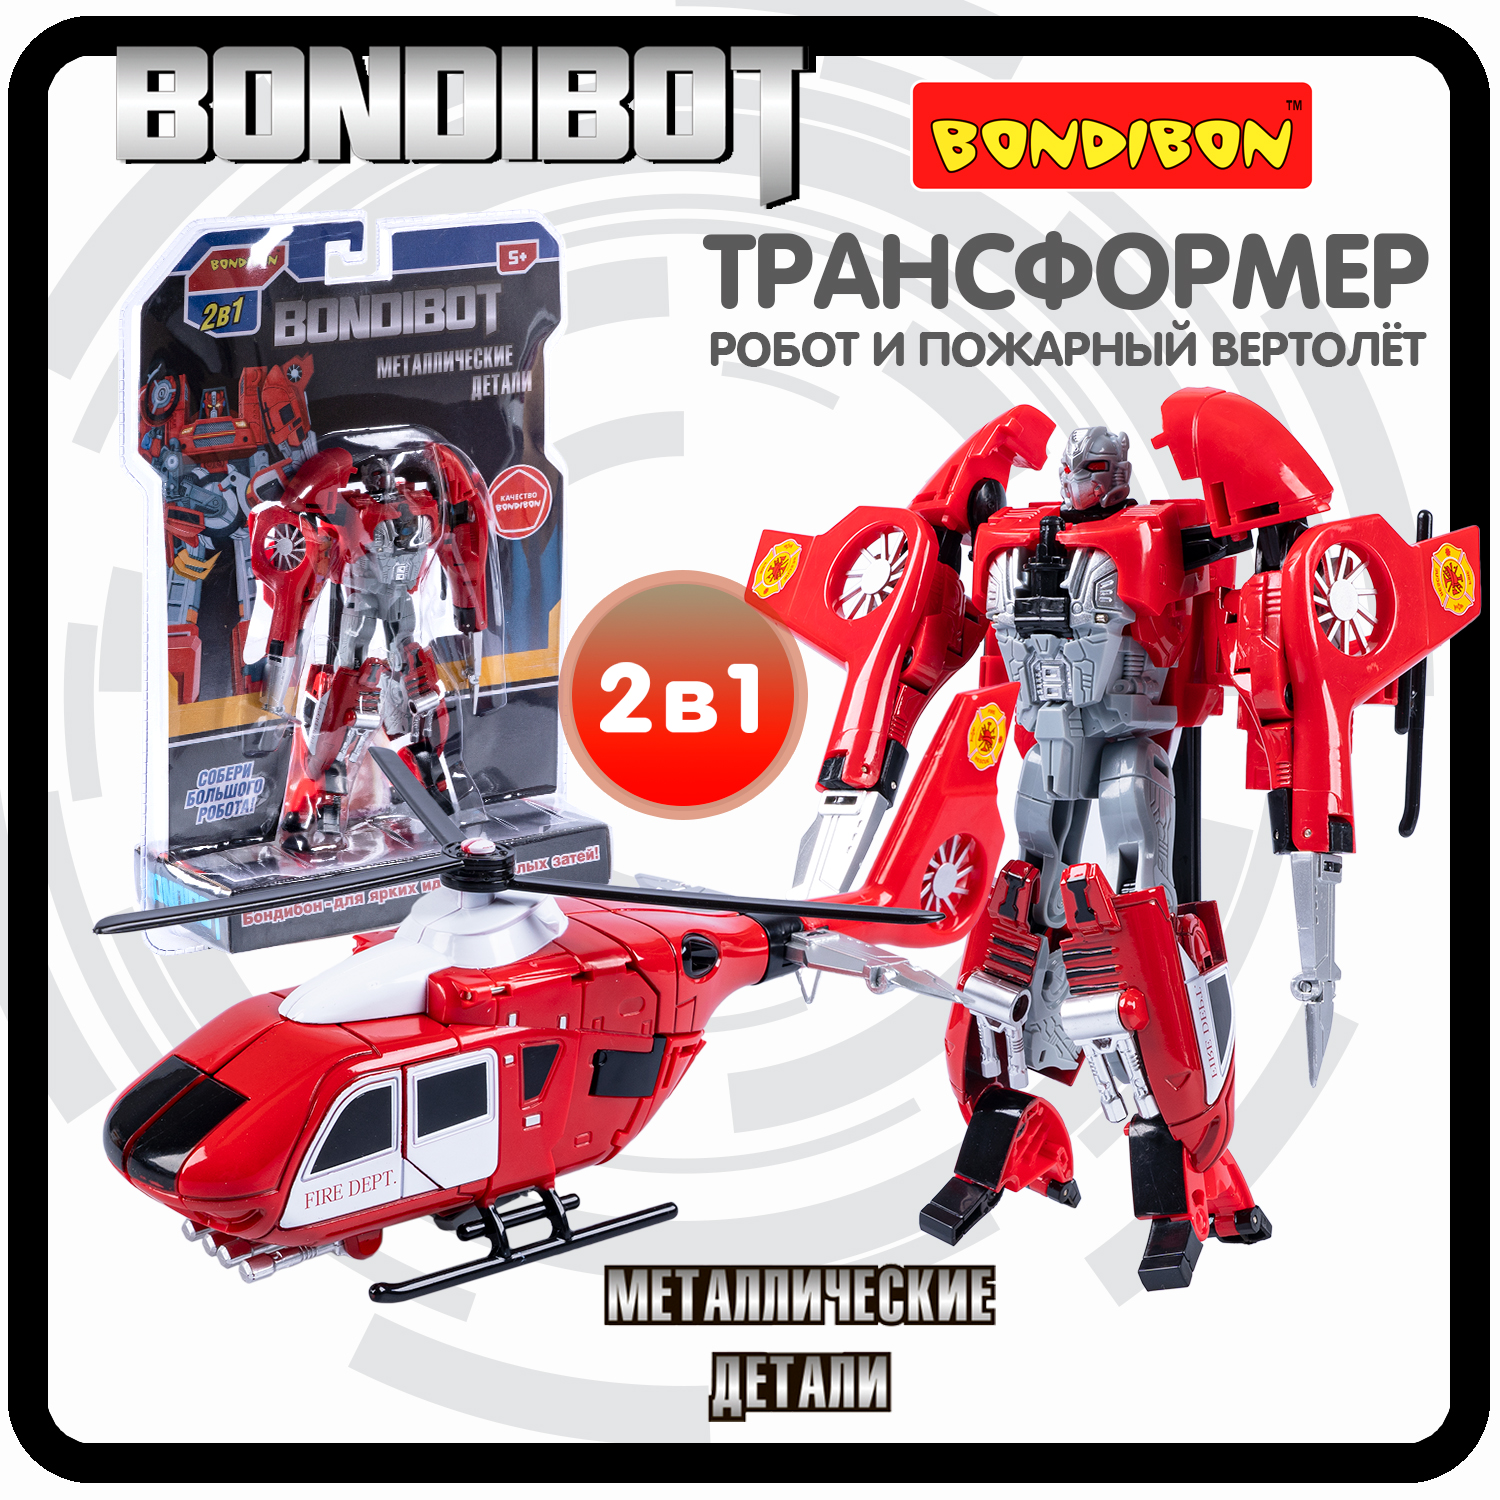 Робот трансформер 2в1 Bondibon BONDIBOT пожарный вертолет